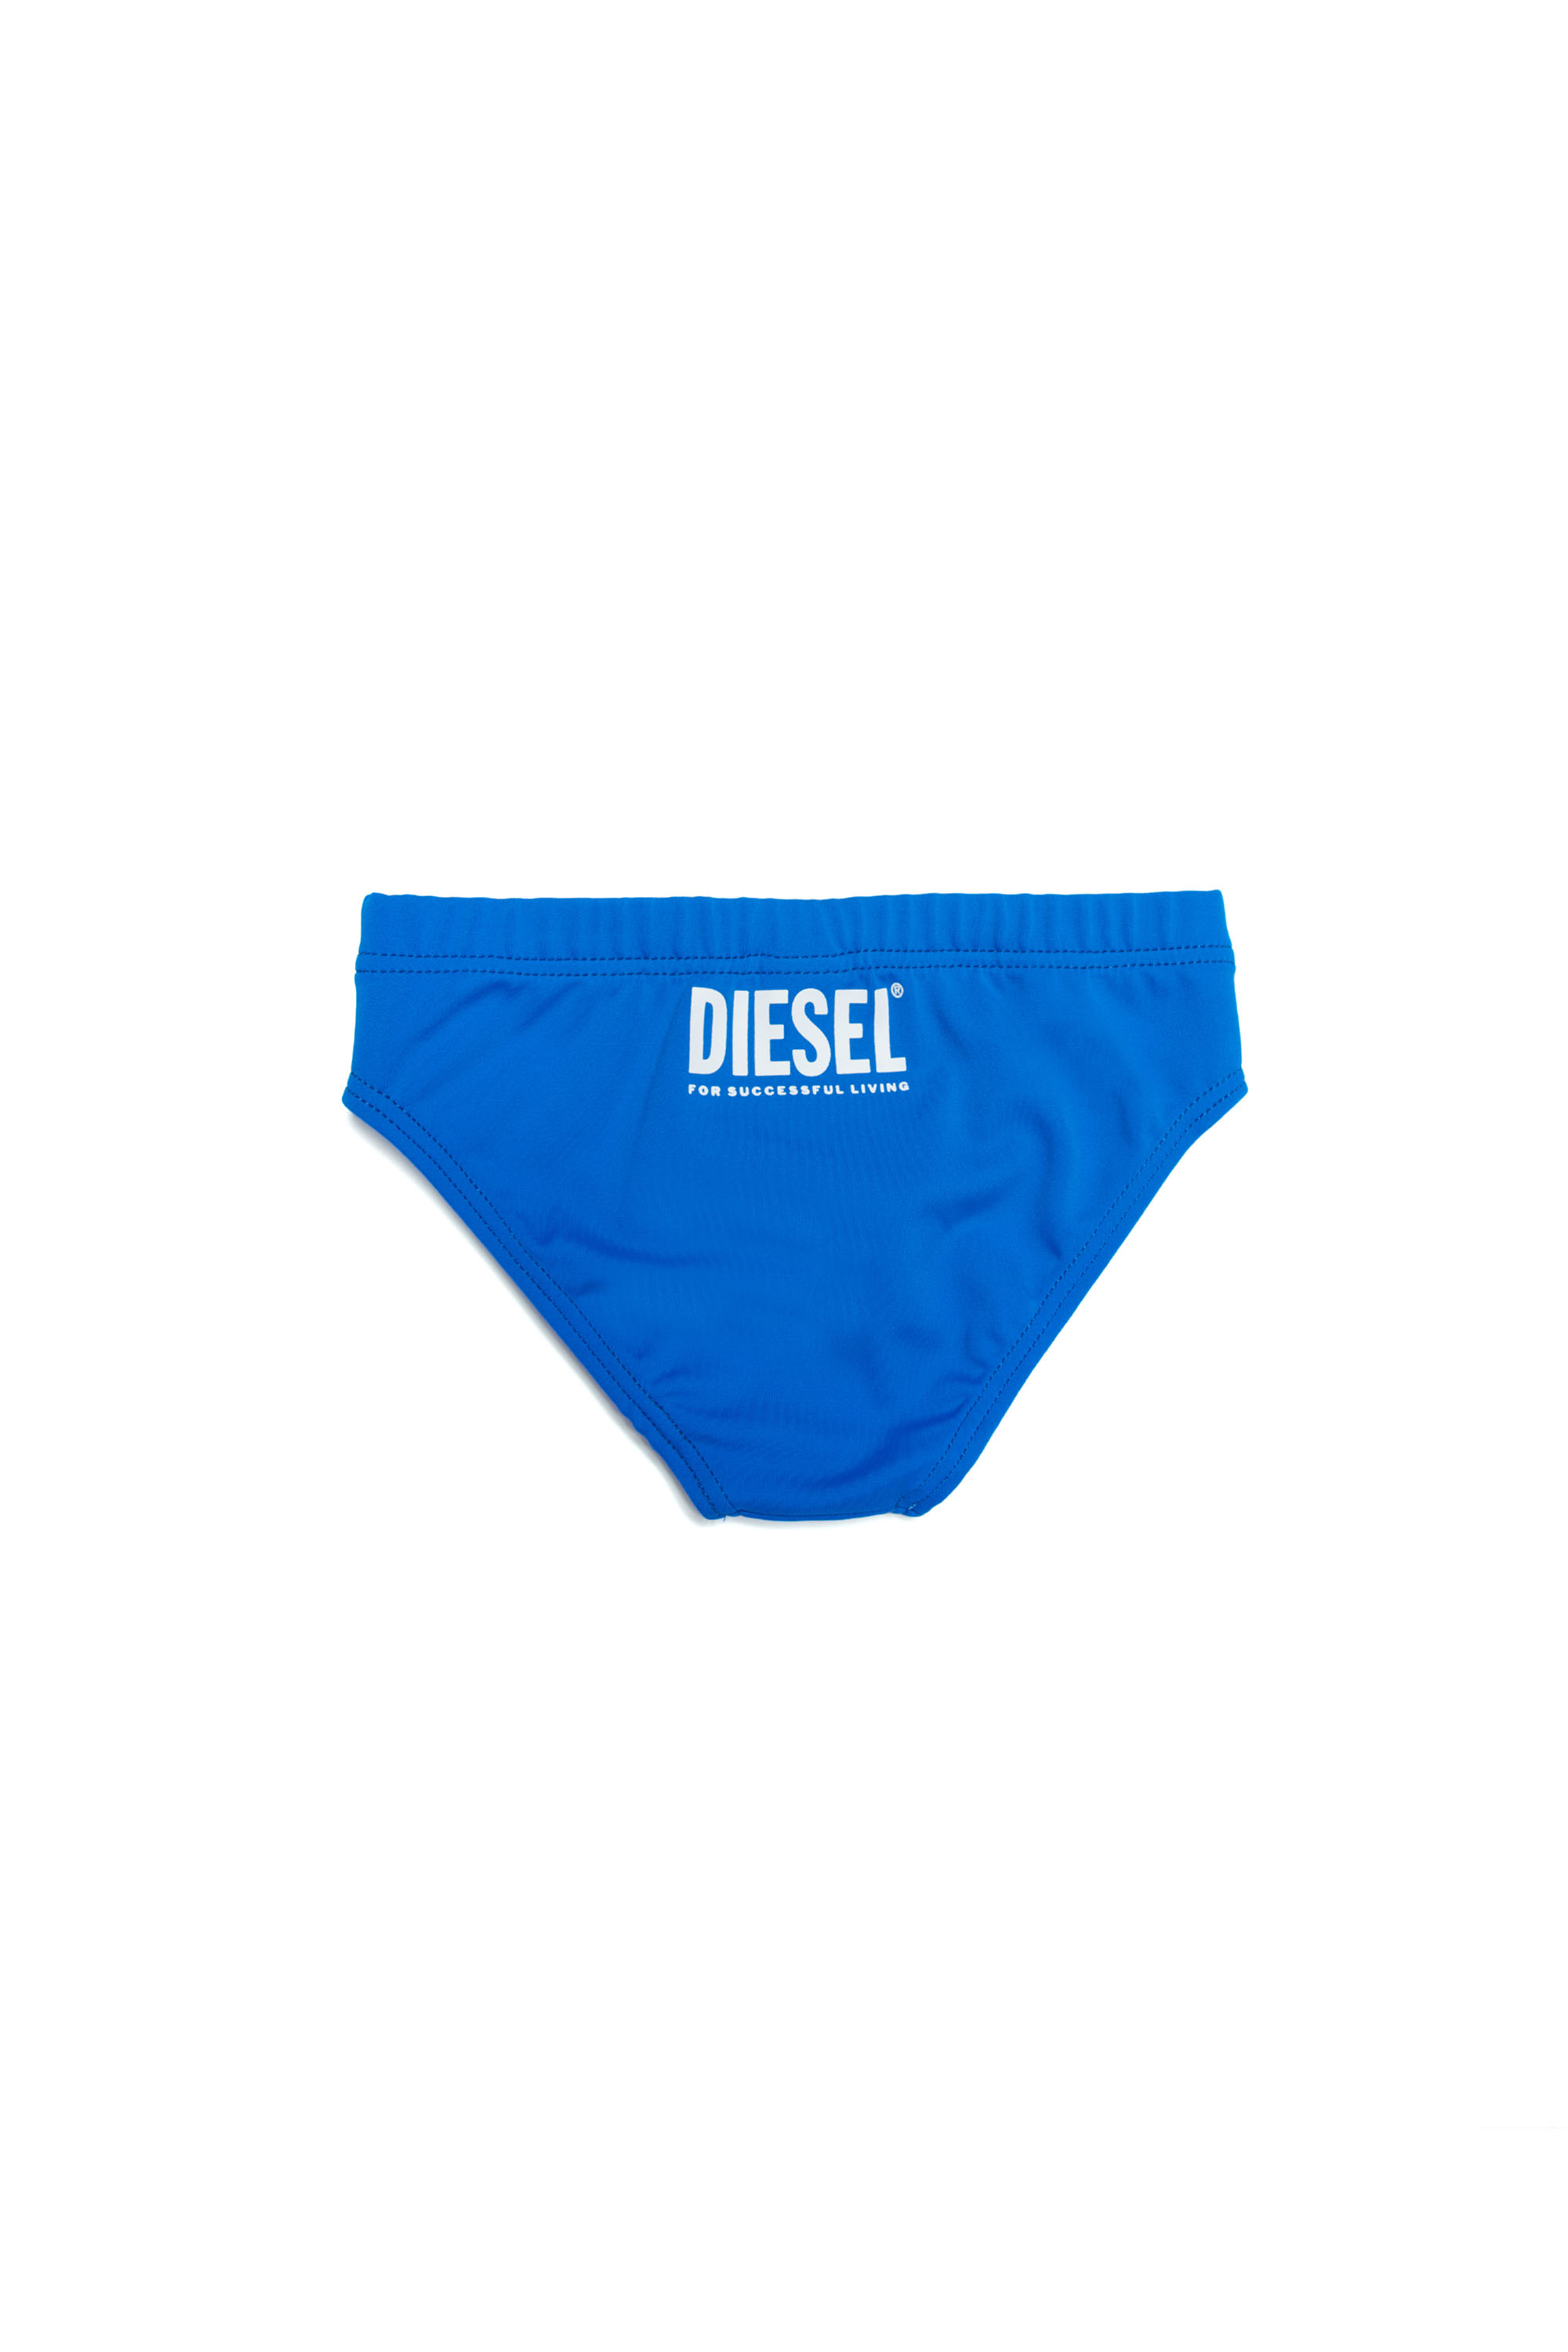 Diesel - MUNNYB, Bleu - Image 2